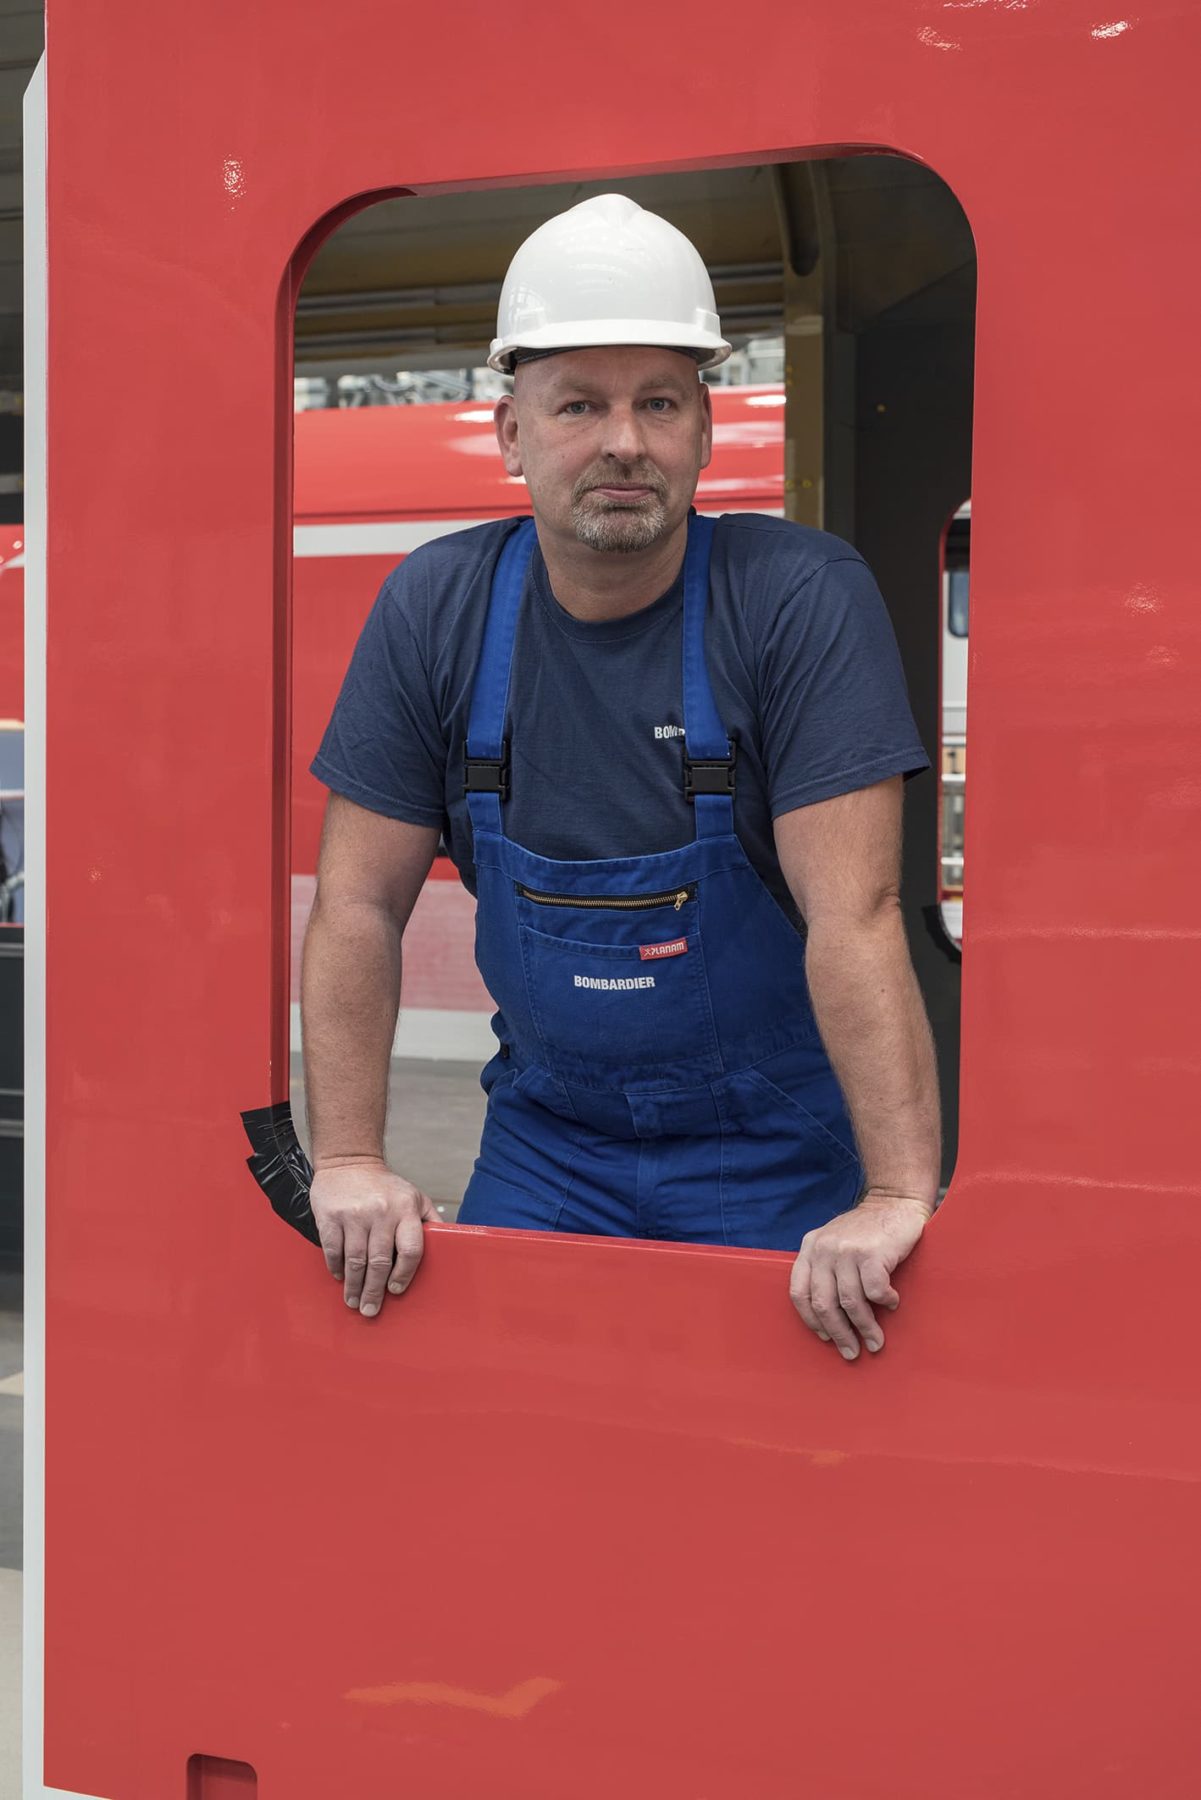 Mann mit weißem Helm schaut aus einer rot umrahmten Fensteröffnung einer Regionalbahnkarosserie heraus